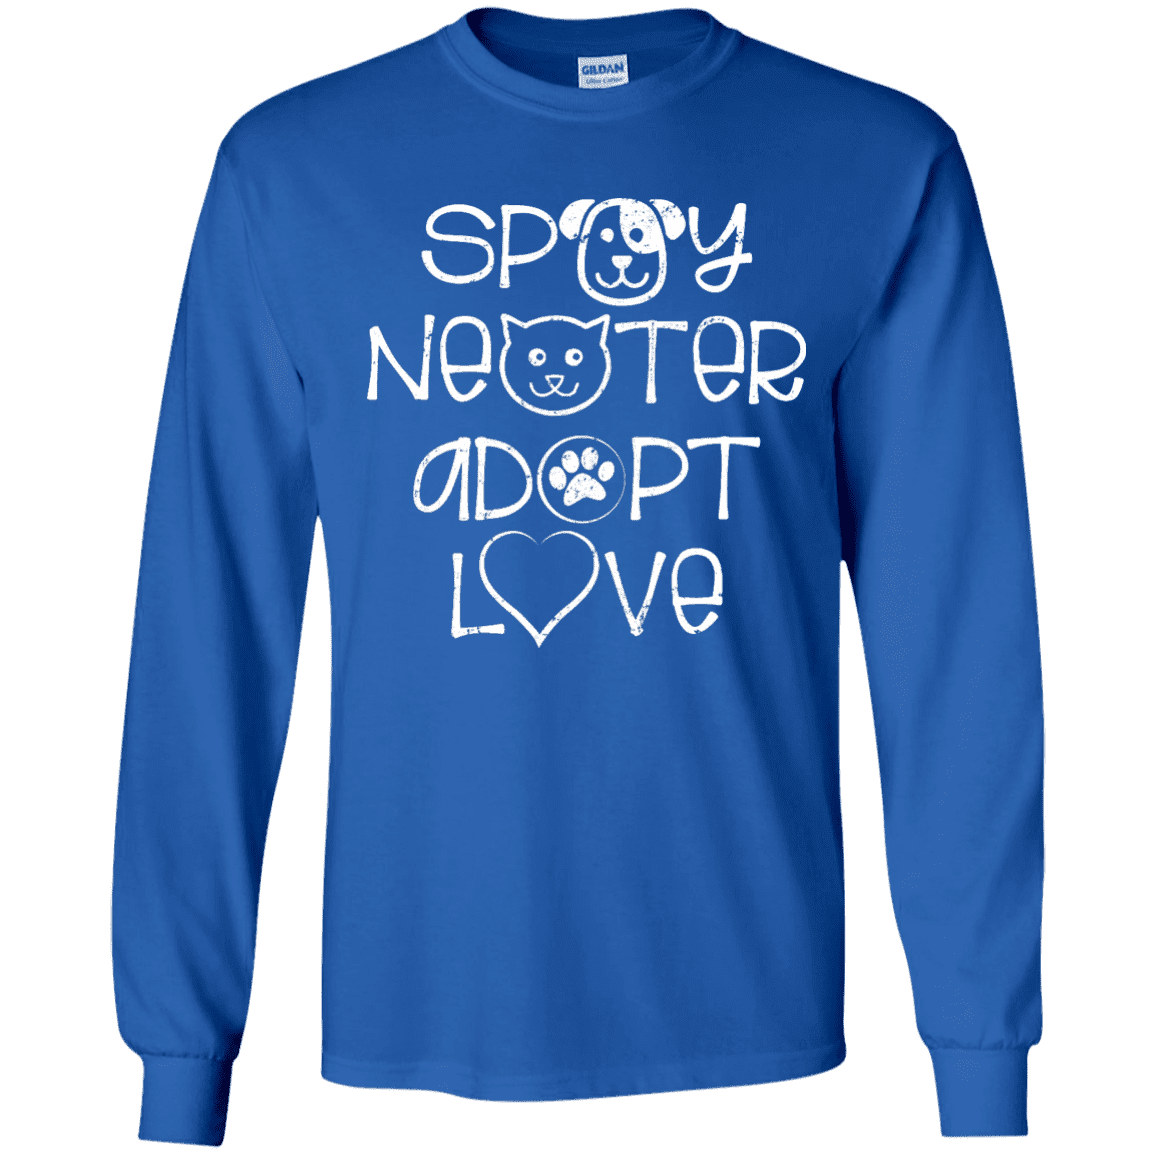 Spay Neuter Adopt Love - Long Sleeve T Shirt.